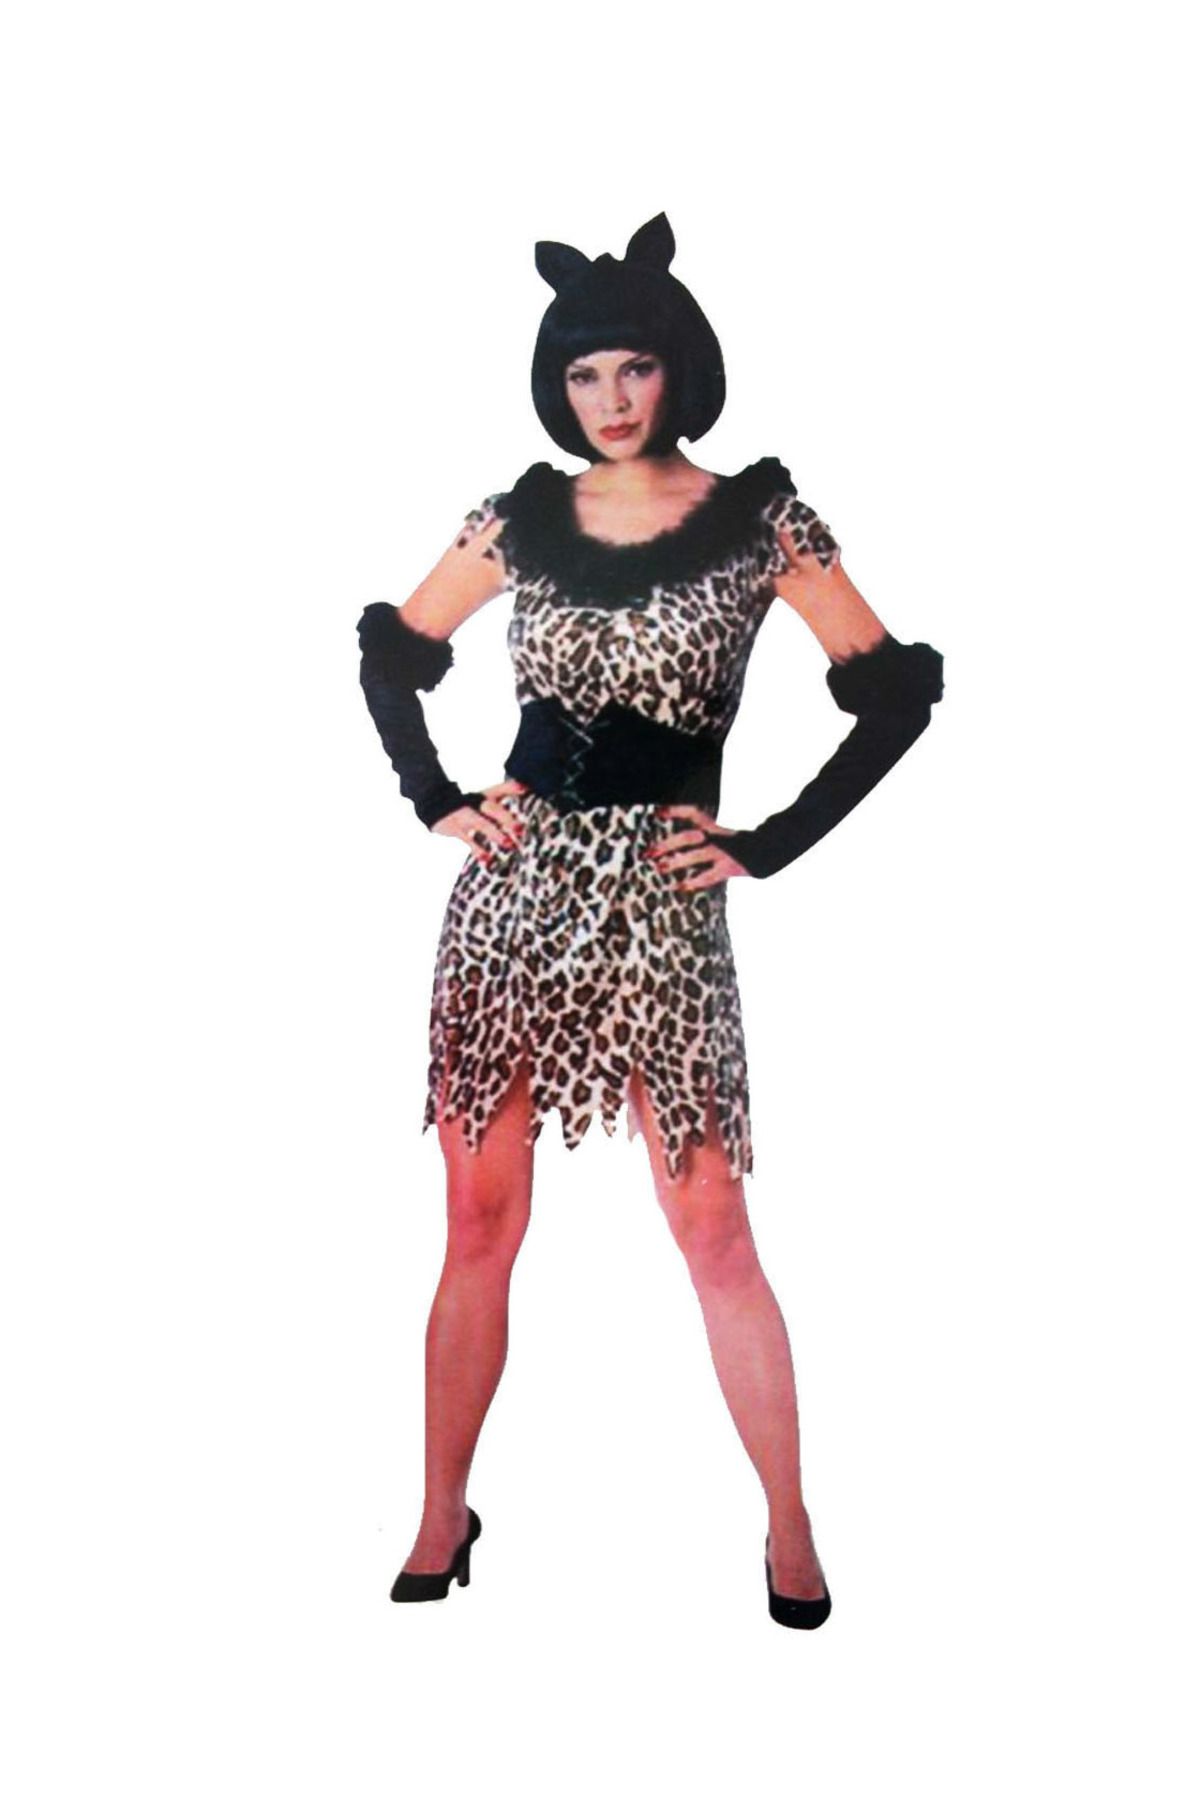 Go İthalat Yetişkin Leopar Kostümü - Kedi Kız Kostümü - Taş Devri Kostümü (4401)